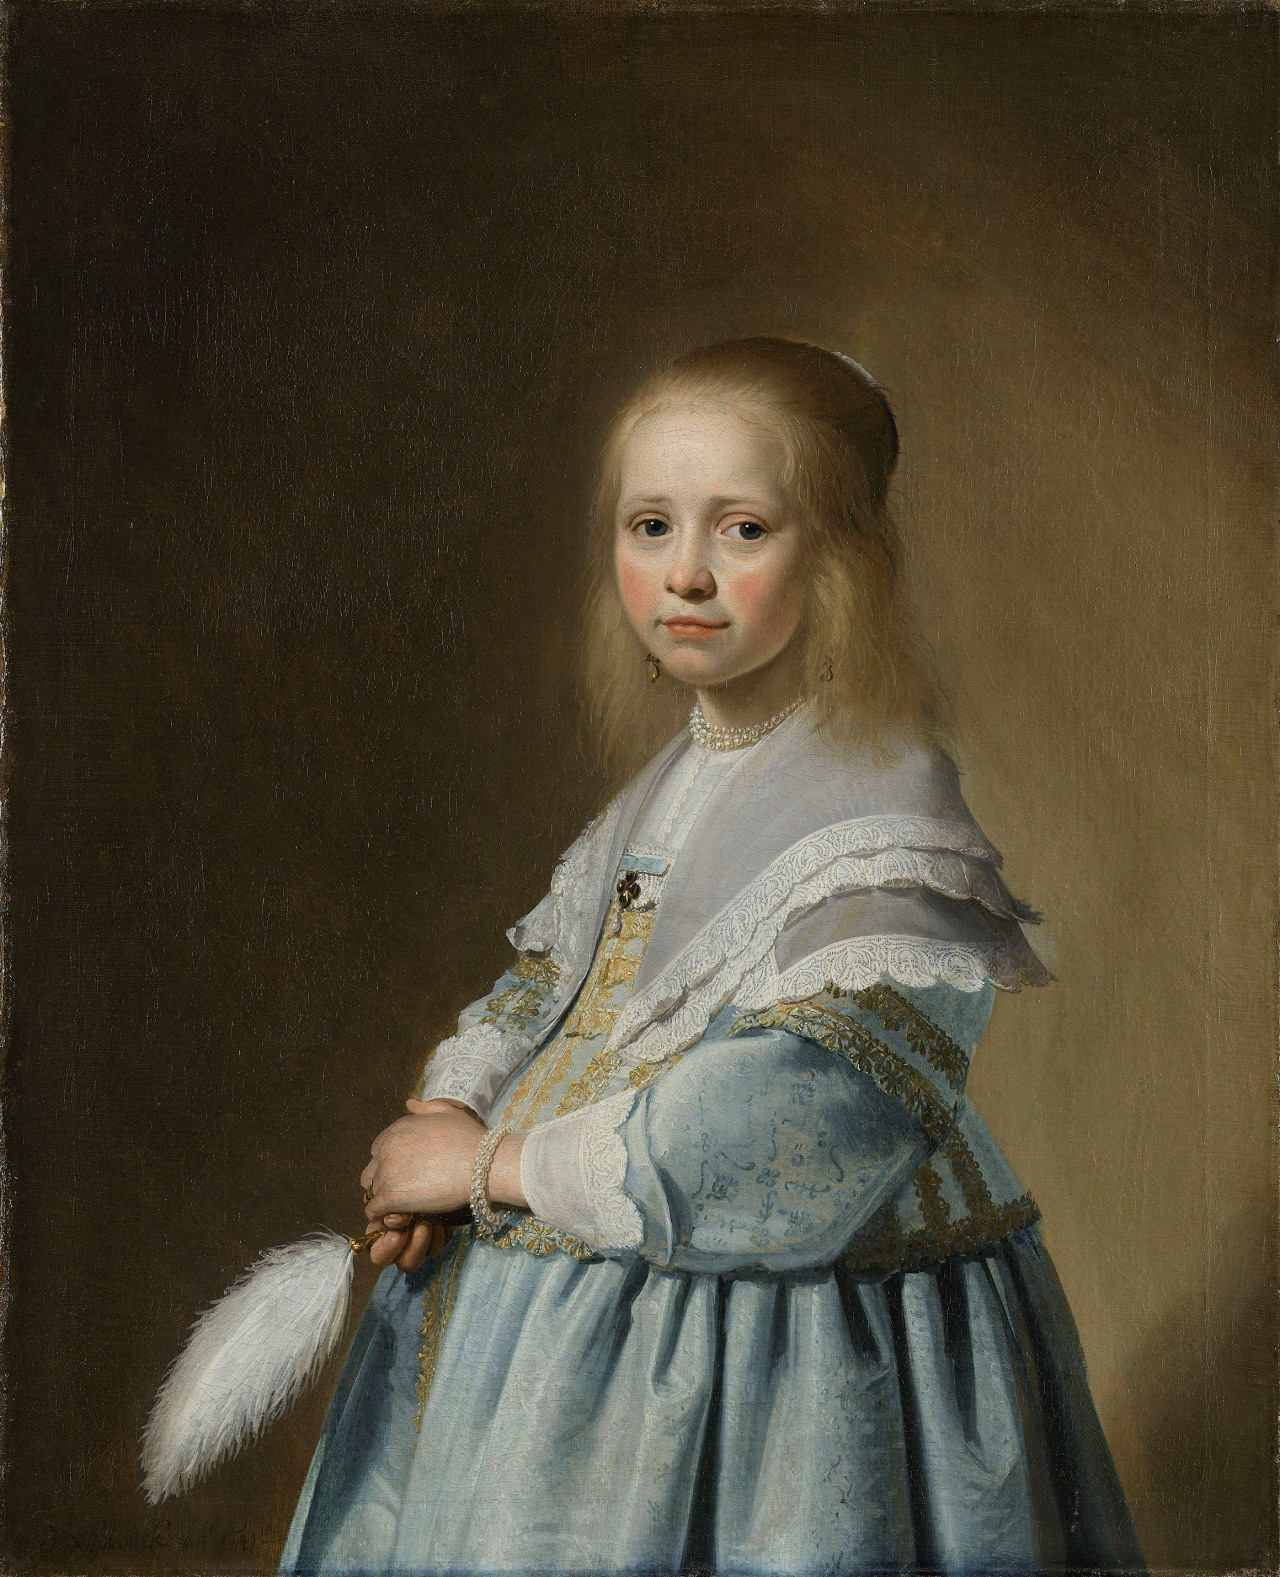 Johannes Cornelisz Verspronck - “Retrato de una niña vestida de azul” (1641, óleo sobre lienzo, 82 x 66 cm, Rijksmuseum, Ámsterdam)
Los retratos siempre han sido un género pictórico para fardar. Muy pocos bolsillos podían permitirse el lujo de pagar...